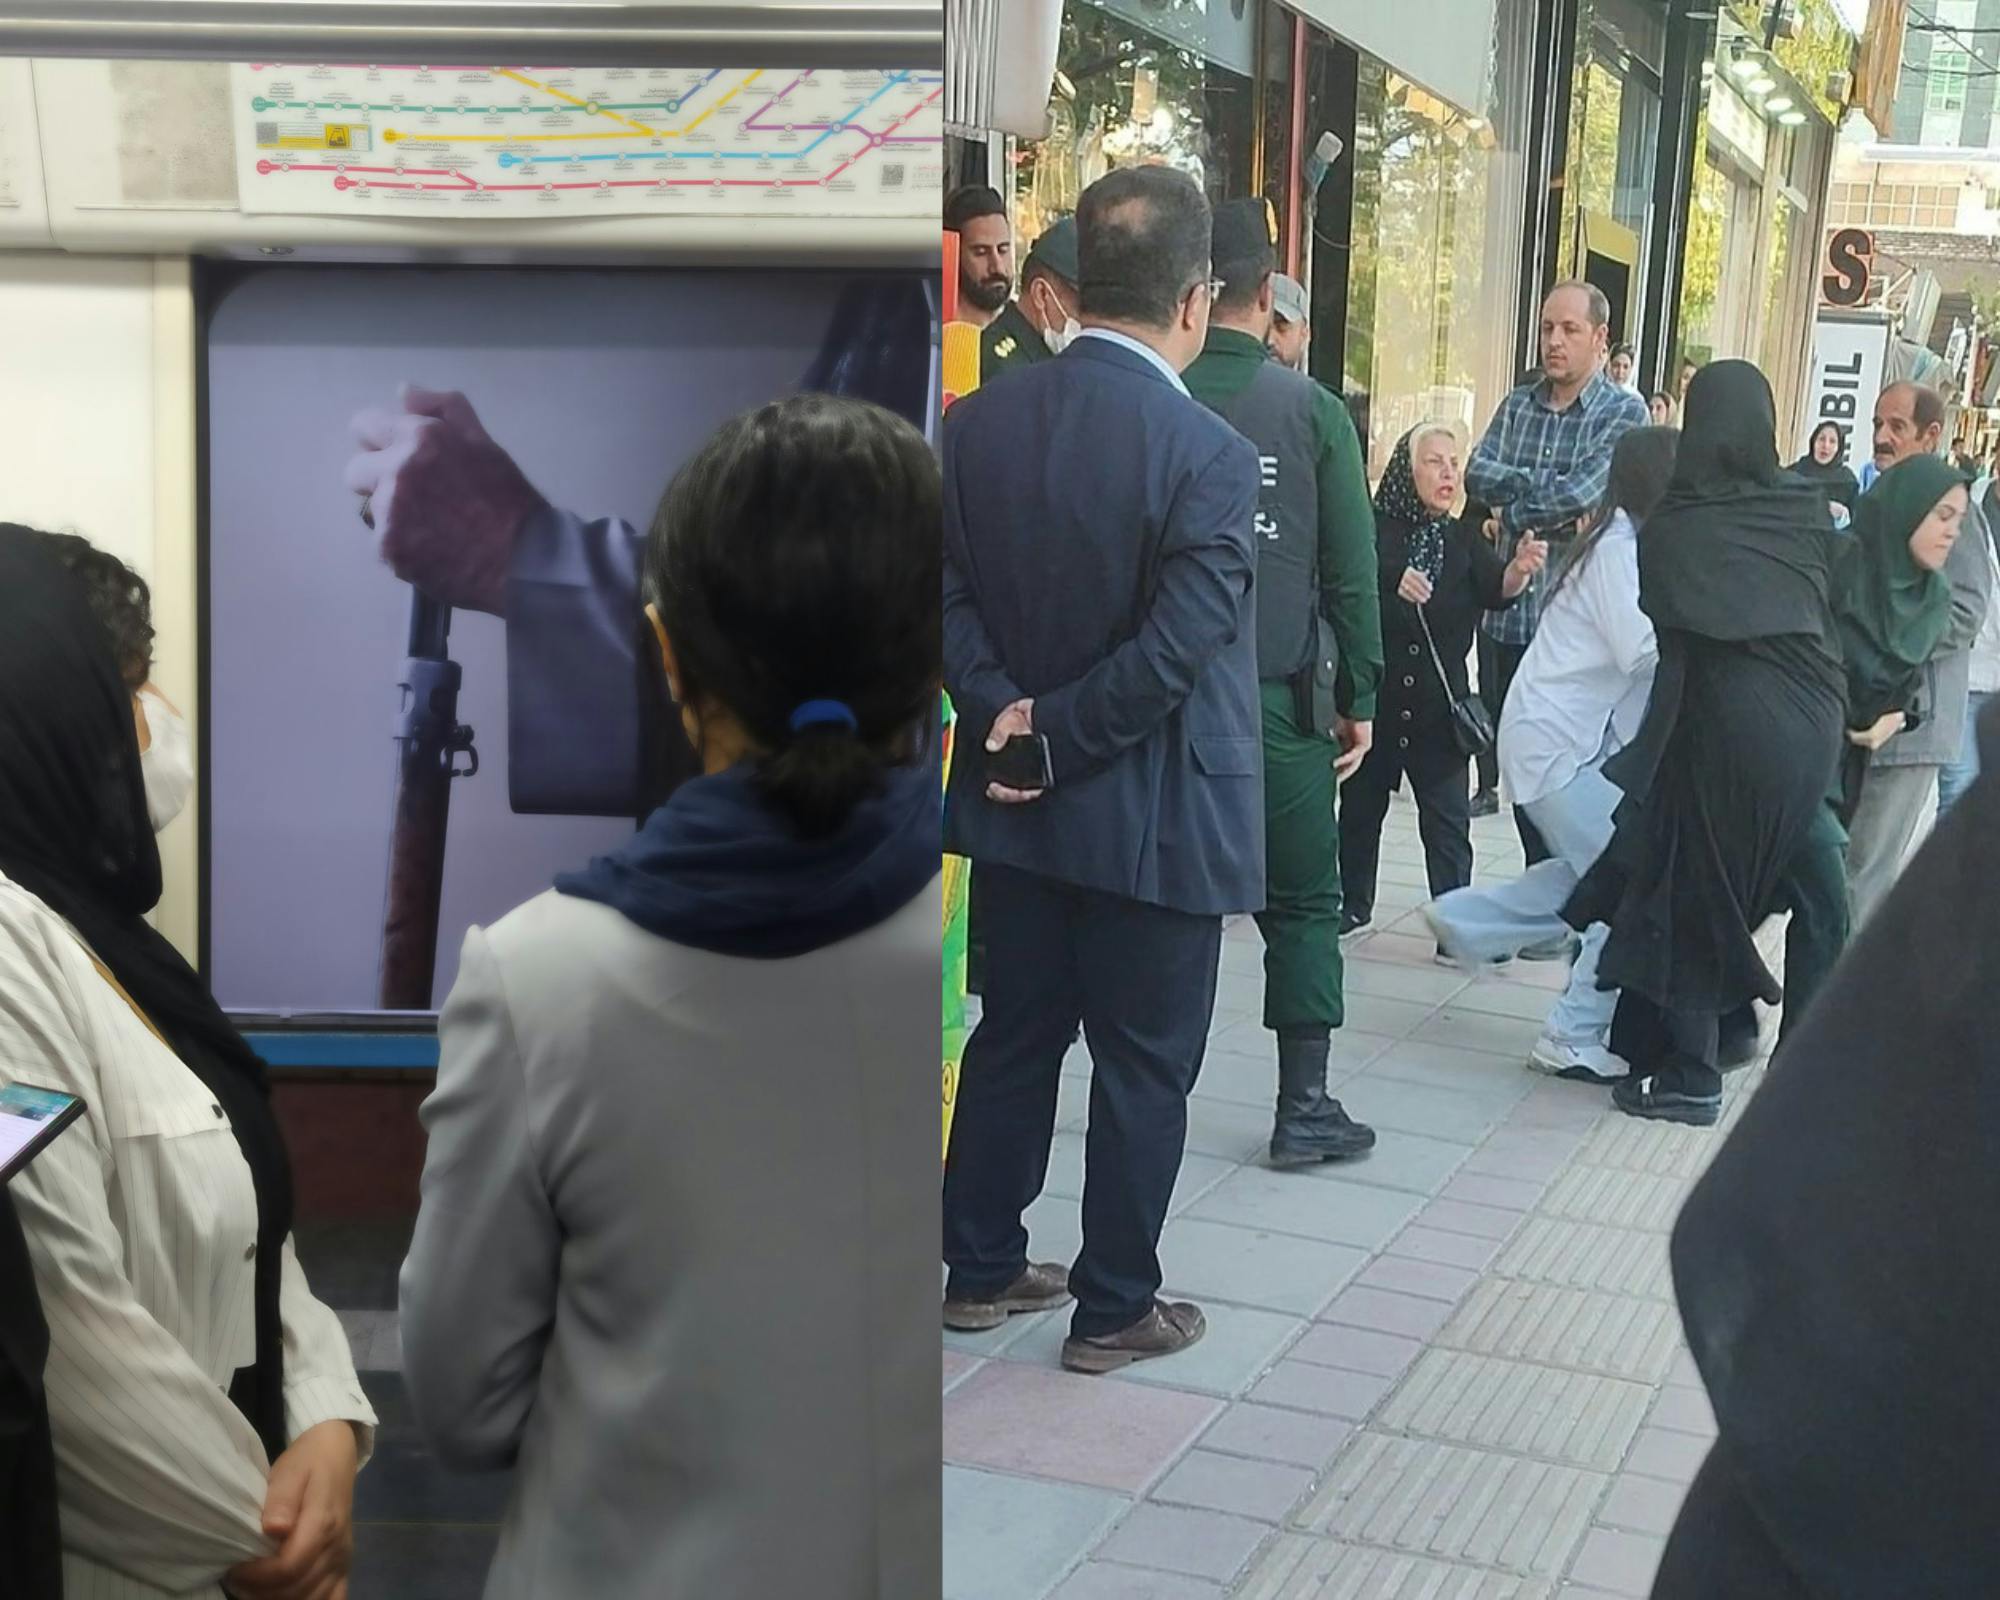 دو تصویر از شبکه‌های اجتماعی. در سمت چپ دو زن رها از اجبار به حجاب در ایستگاه مترو خیره به دست یک روحانی هستند که اسلحه به مشت گرفته است. در سمت راست تصویر گروهی از مردان و زنان که نیروهای امنیتی هستند، زنی را با خشونت می‌برند در حالی که همراهان آن زن در تلاش برای رهایی او تقلا می‌کنند.